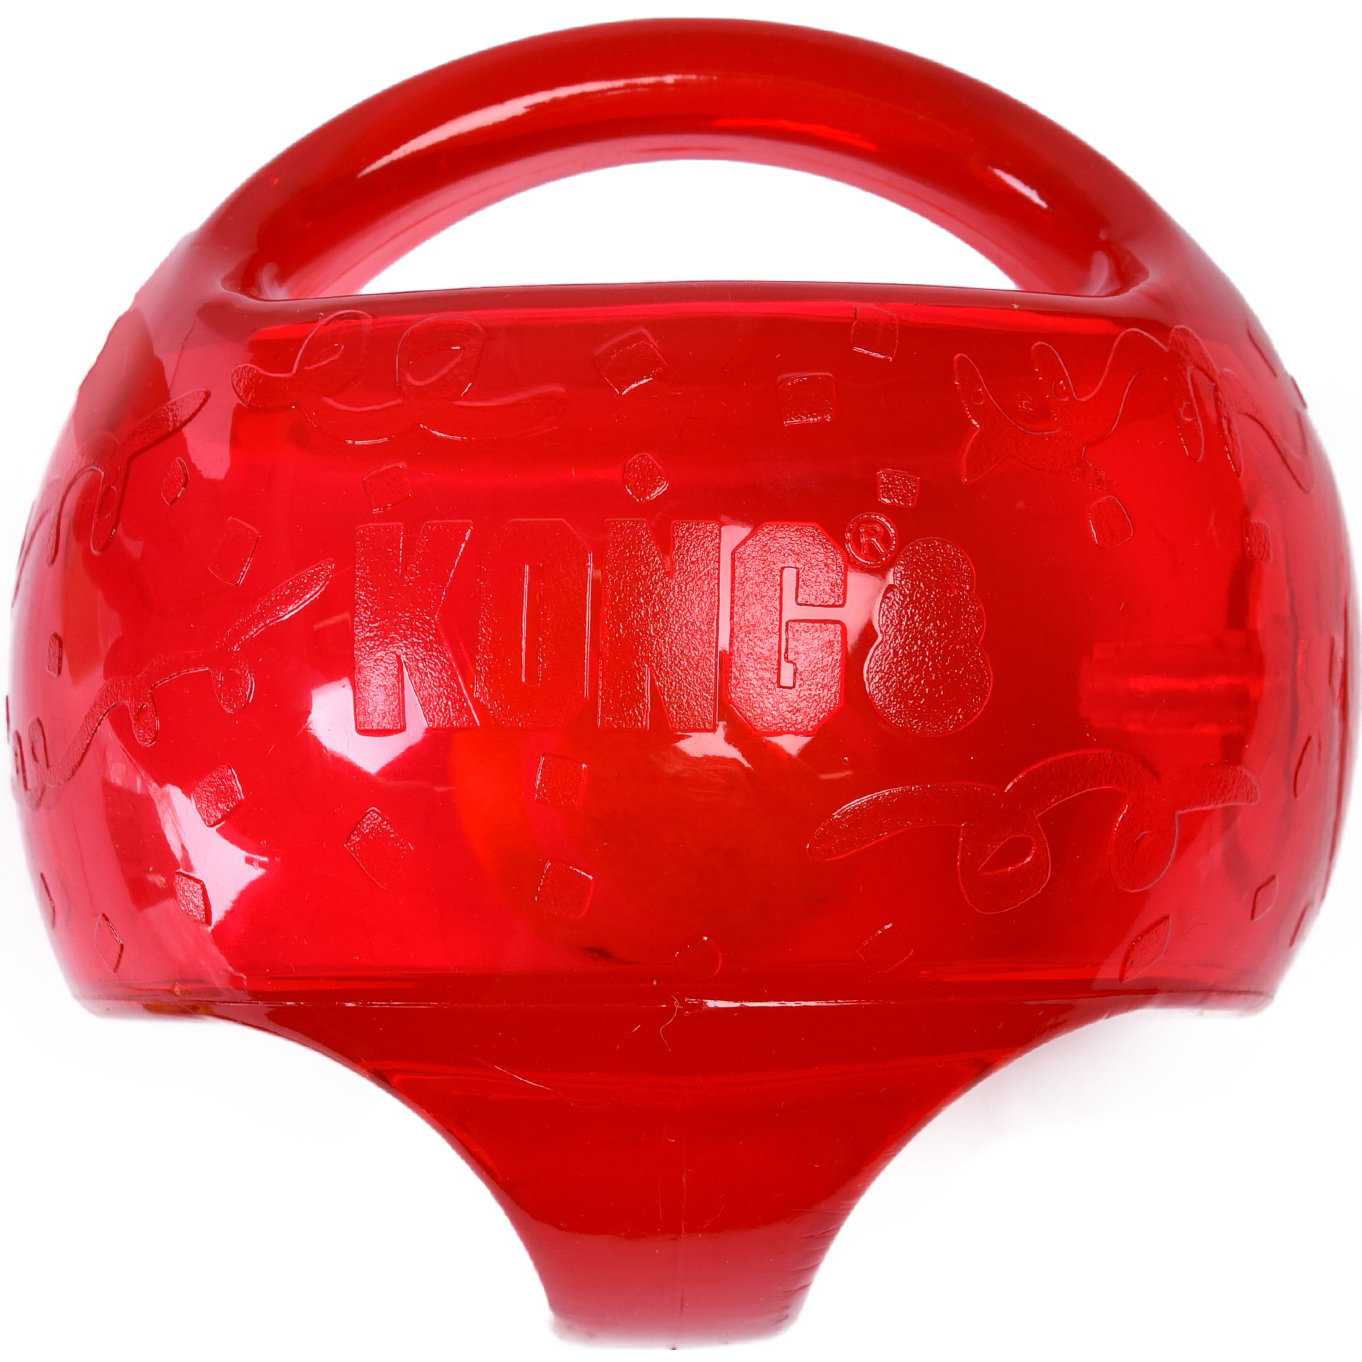 фото Игрушка для собак kong jumbler мячик синтетическая резина 14 см в ассортименте